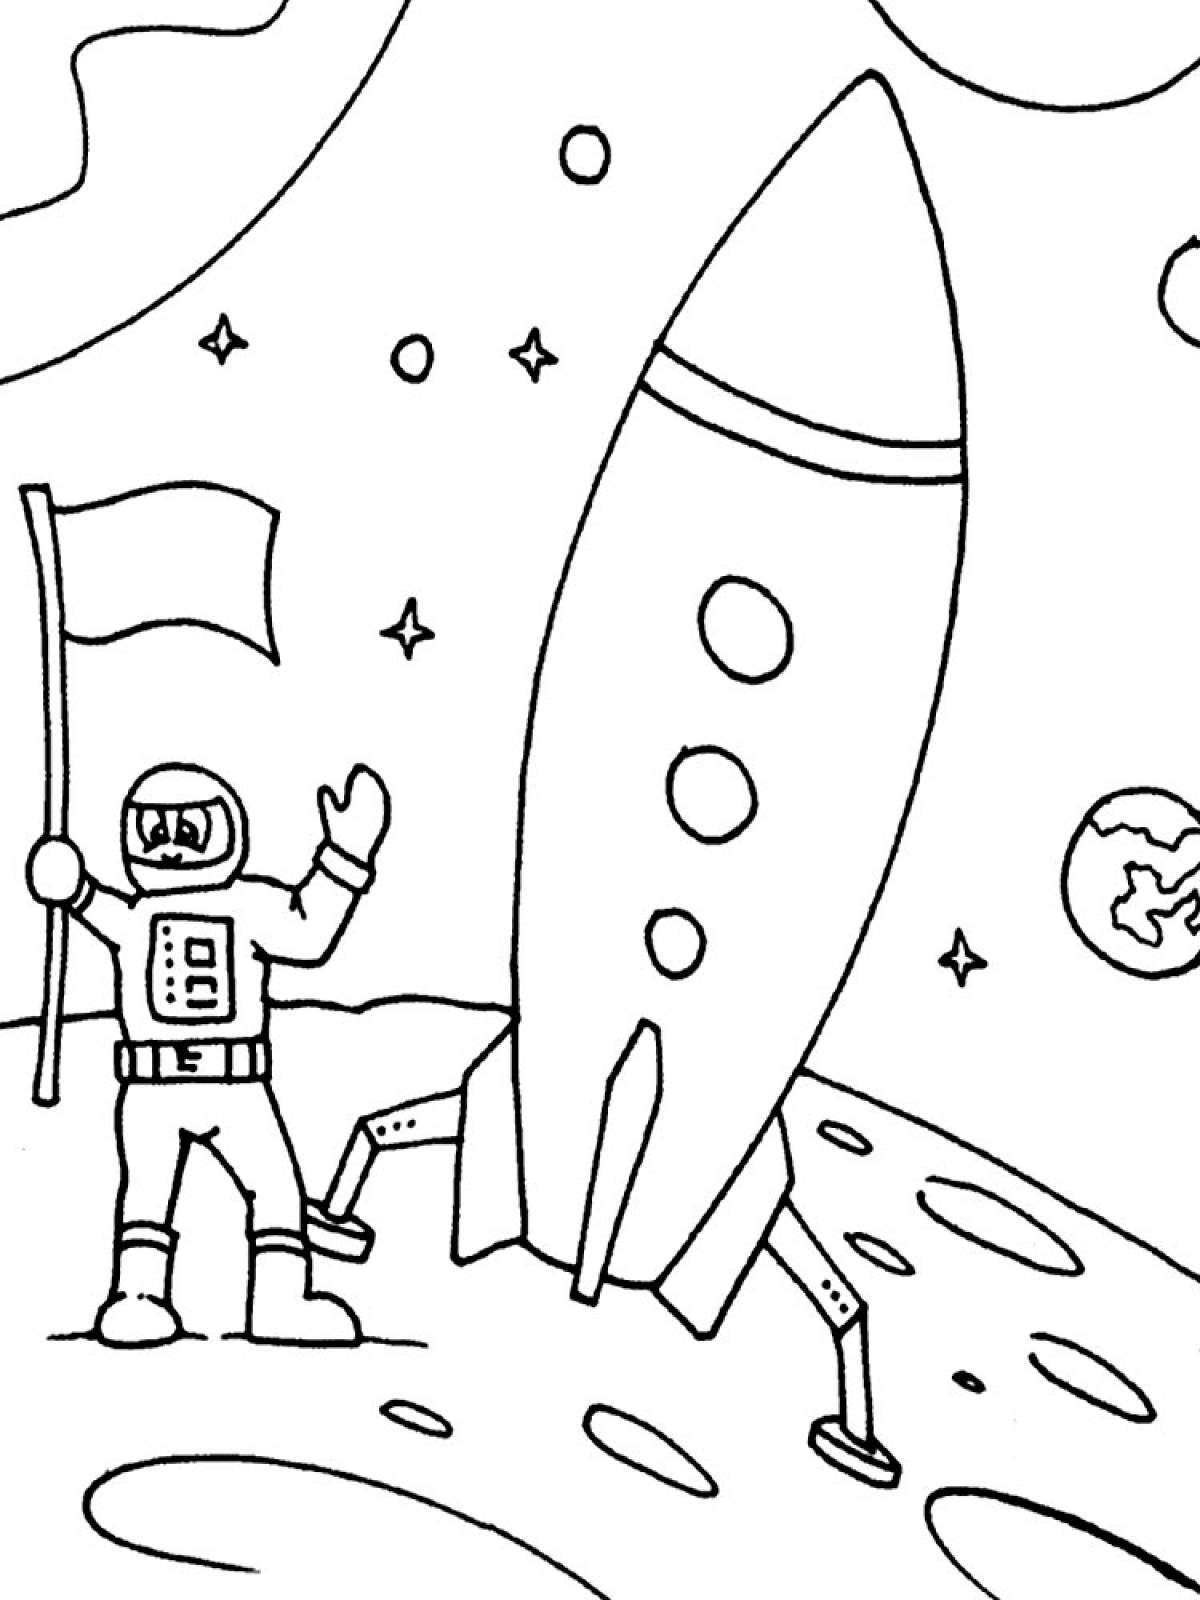 Рисунок ко Дню космонавтики